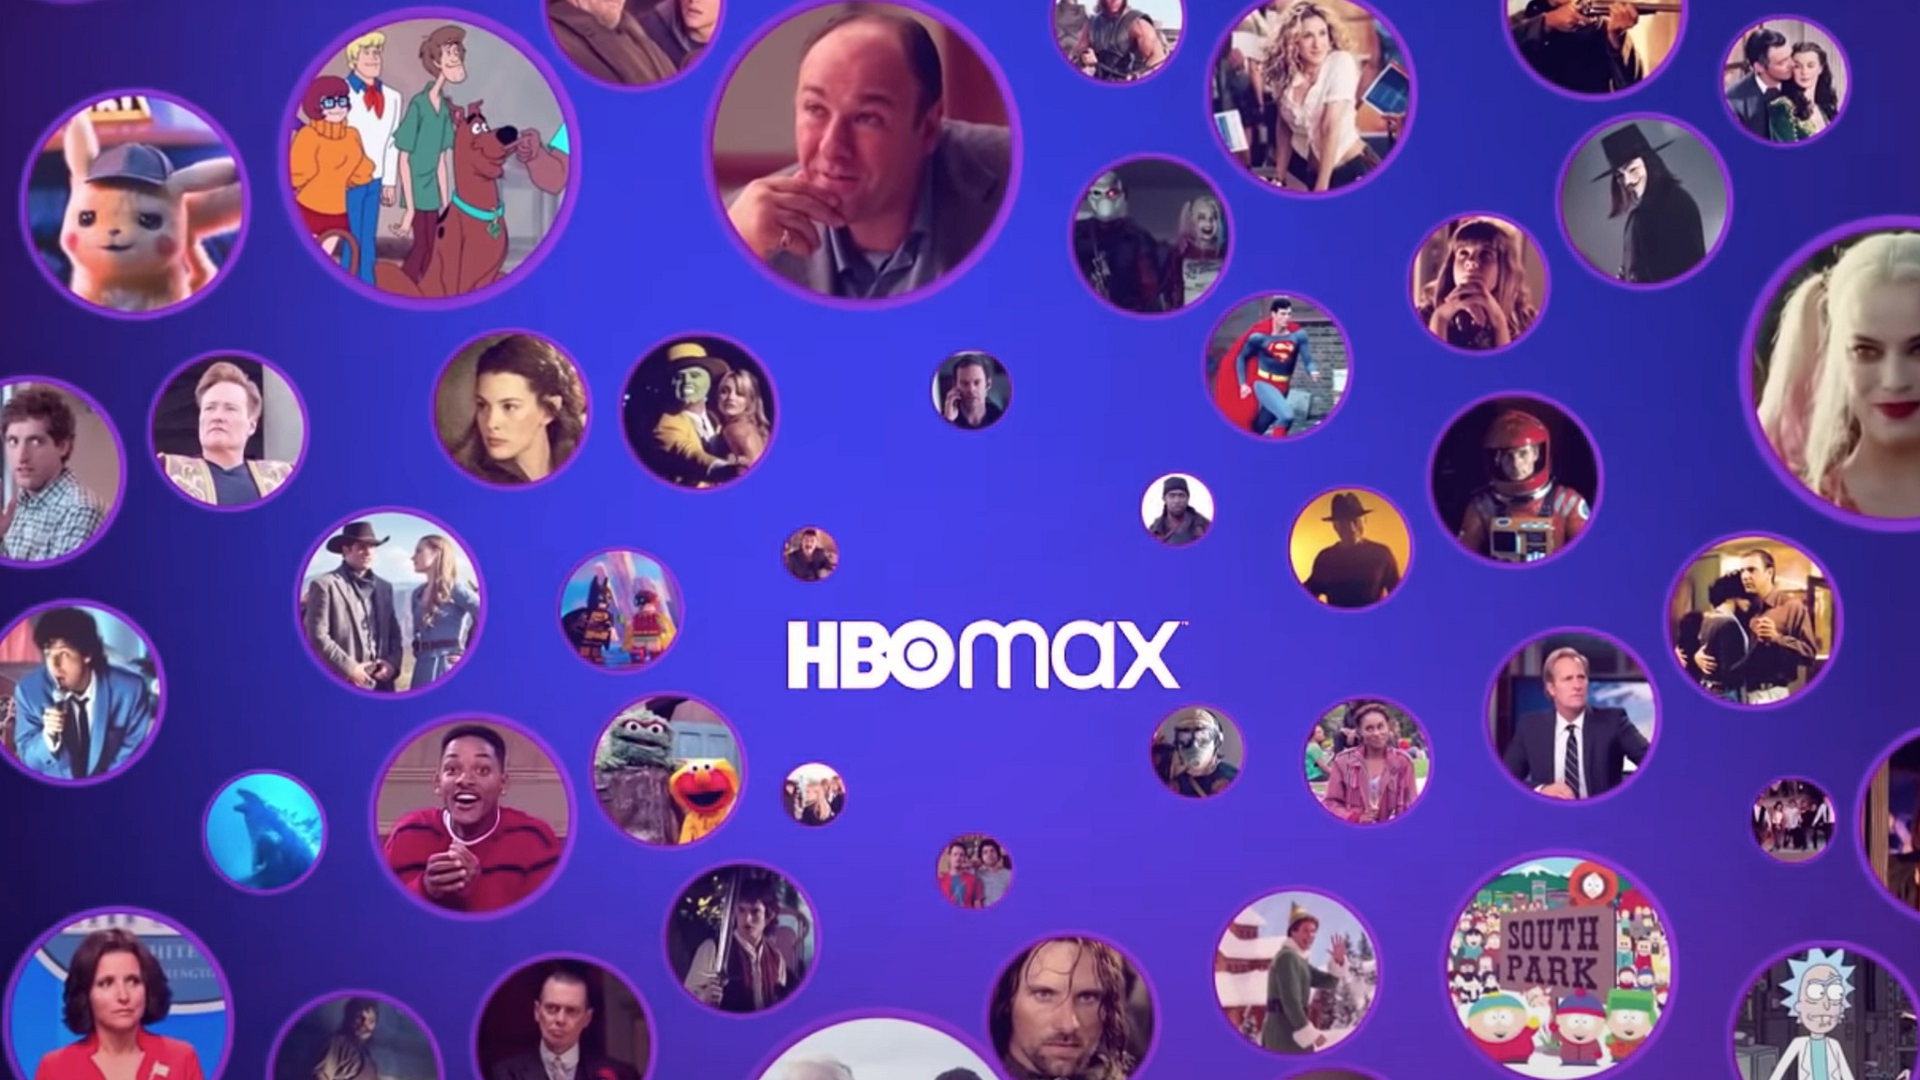 X 上的HBO Max Latinoamérica：「El año llega con historias